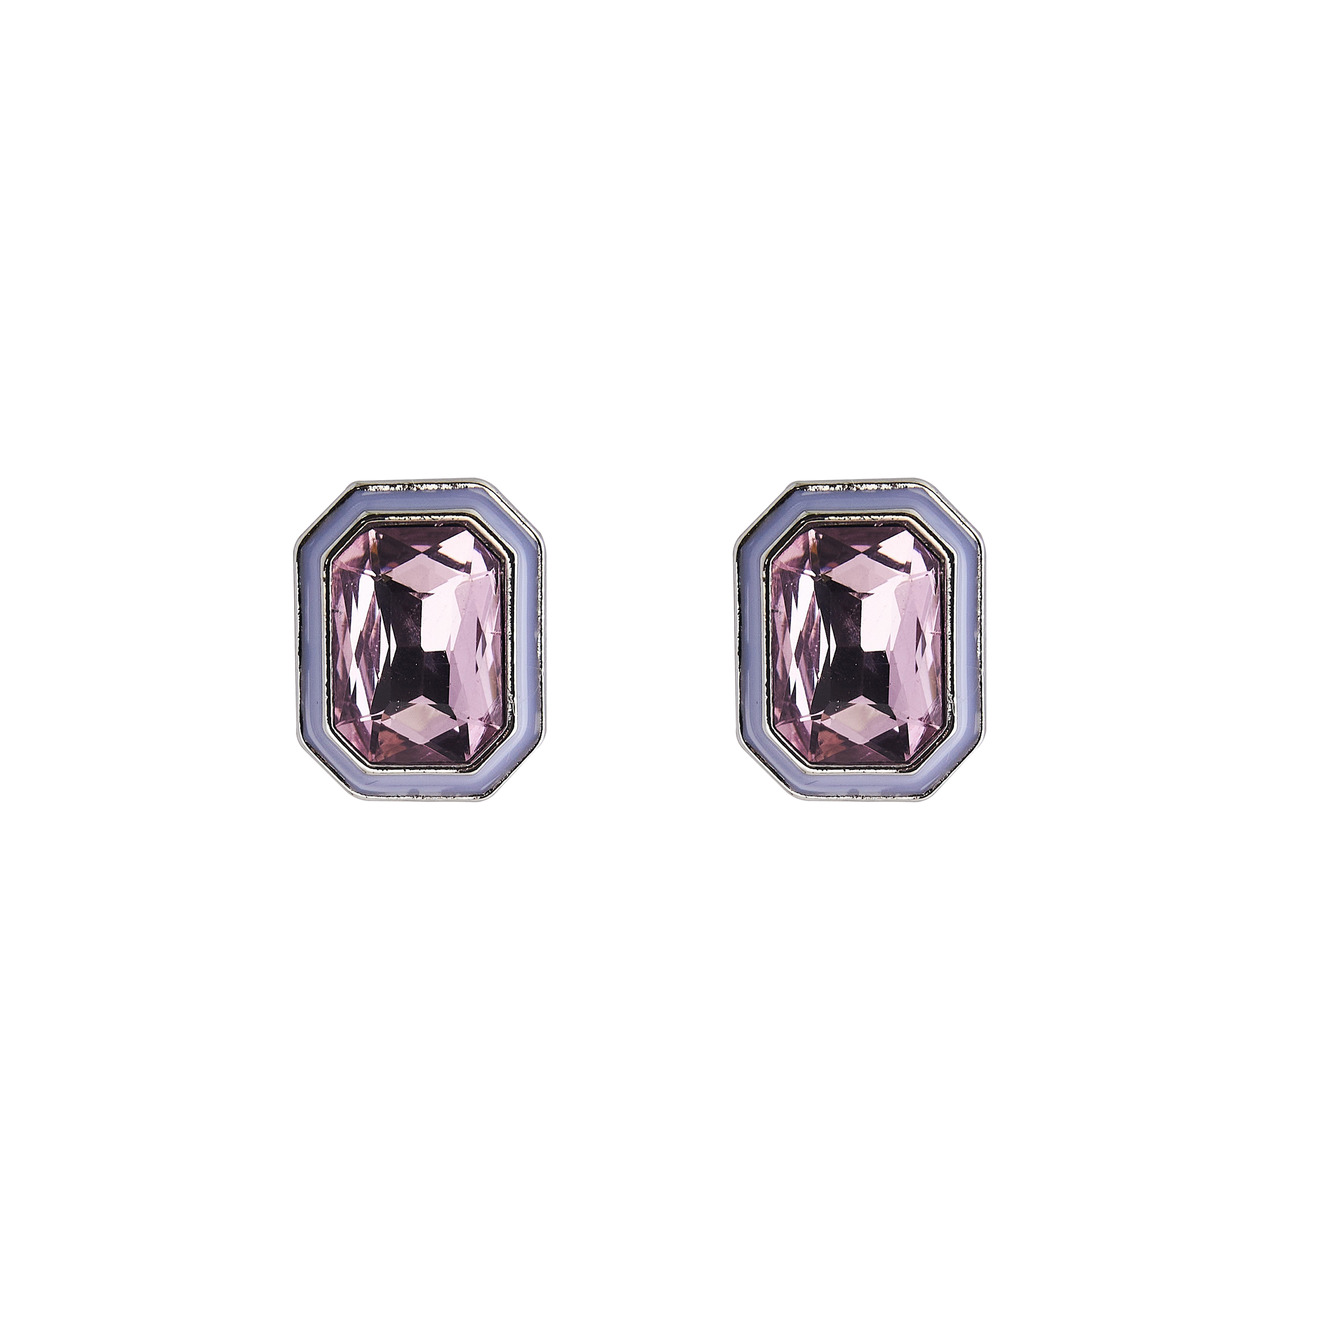 Herald Percy Серебристые серьги с розовыми кристаллами и белой эмалью herald percy кольцо с розовыми кристаллами